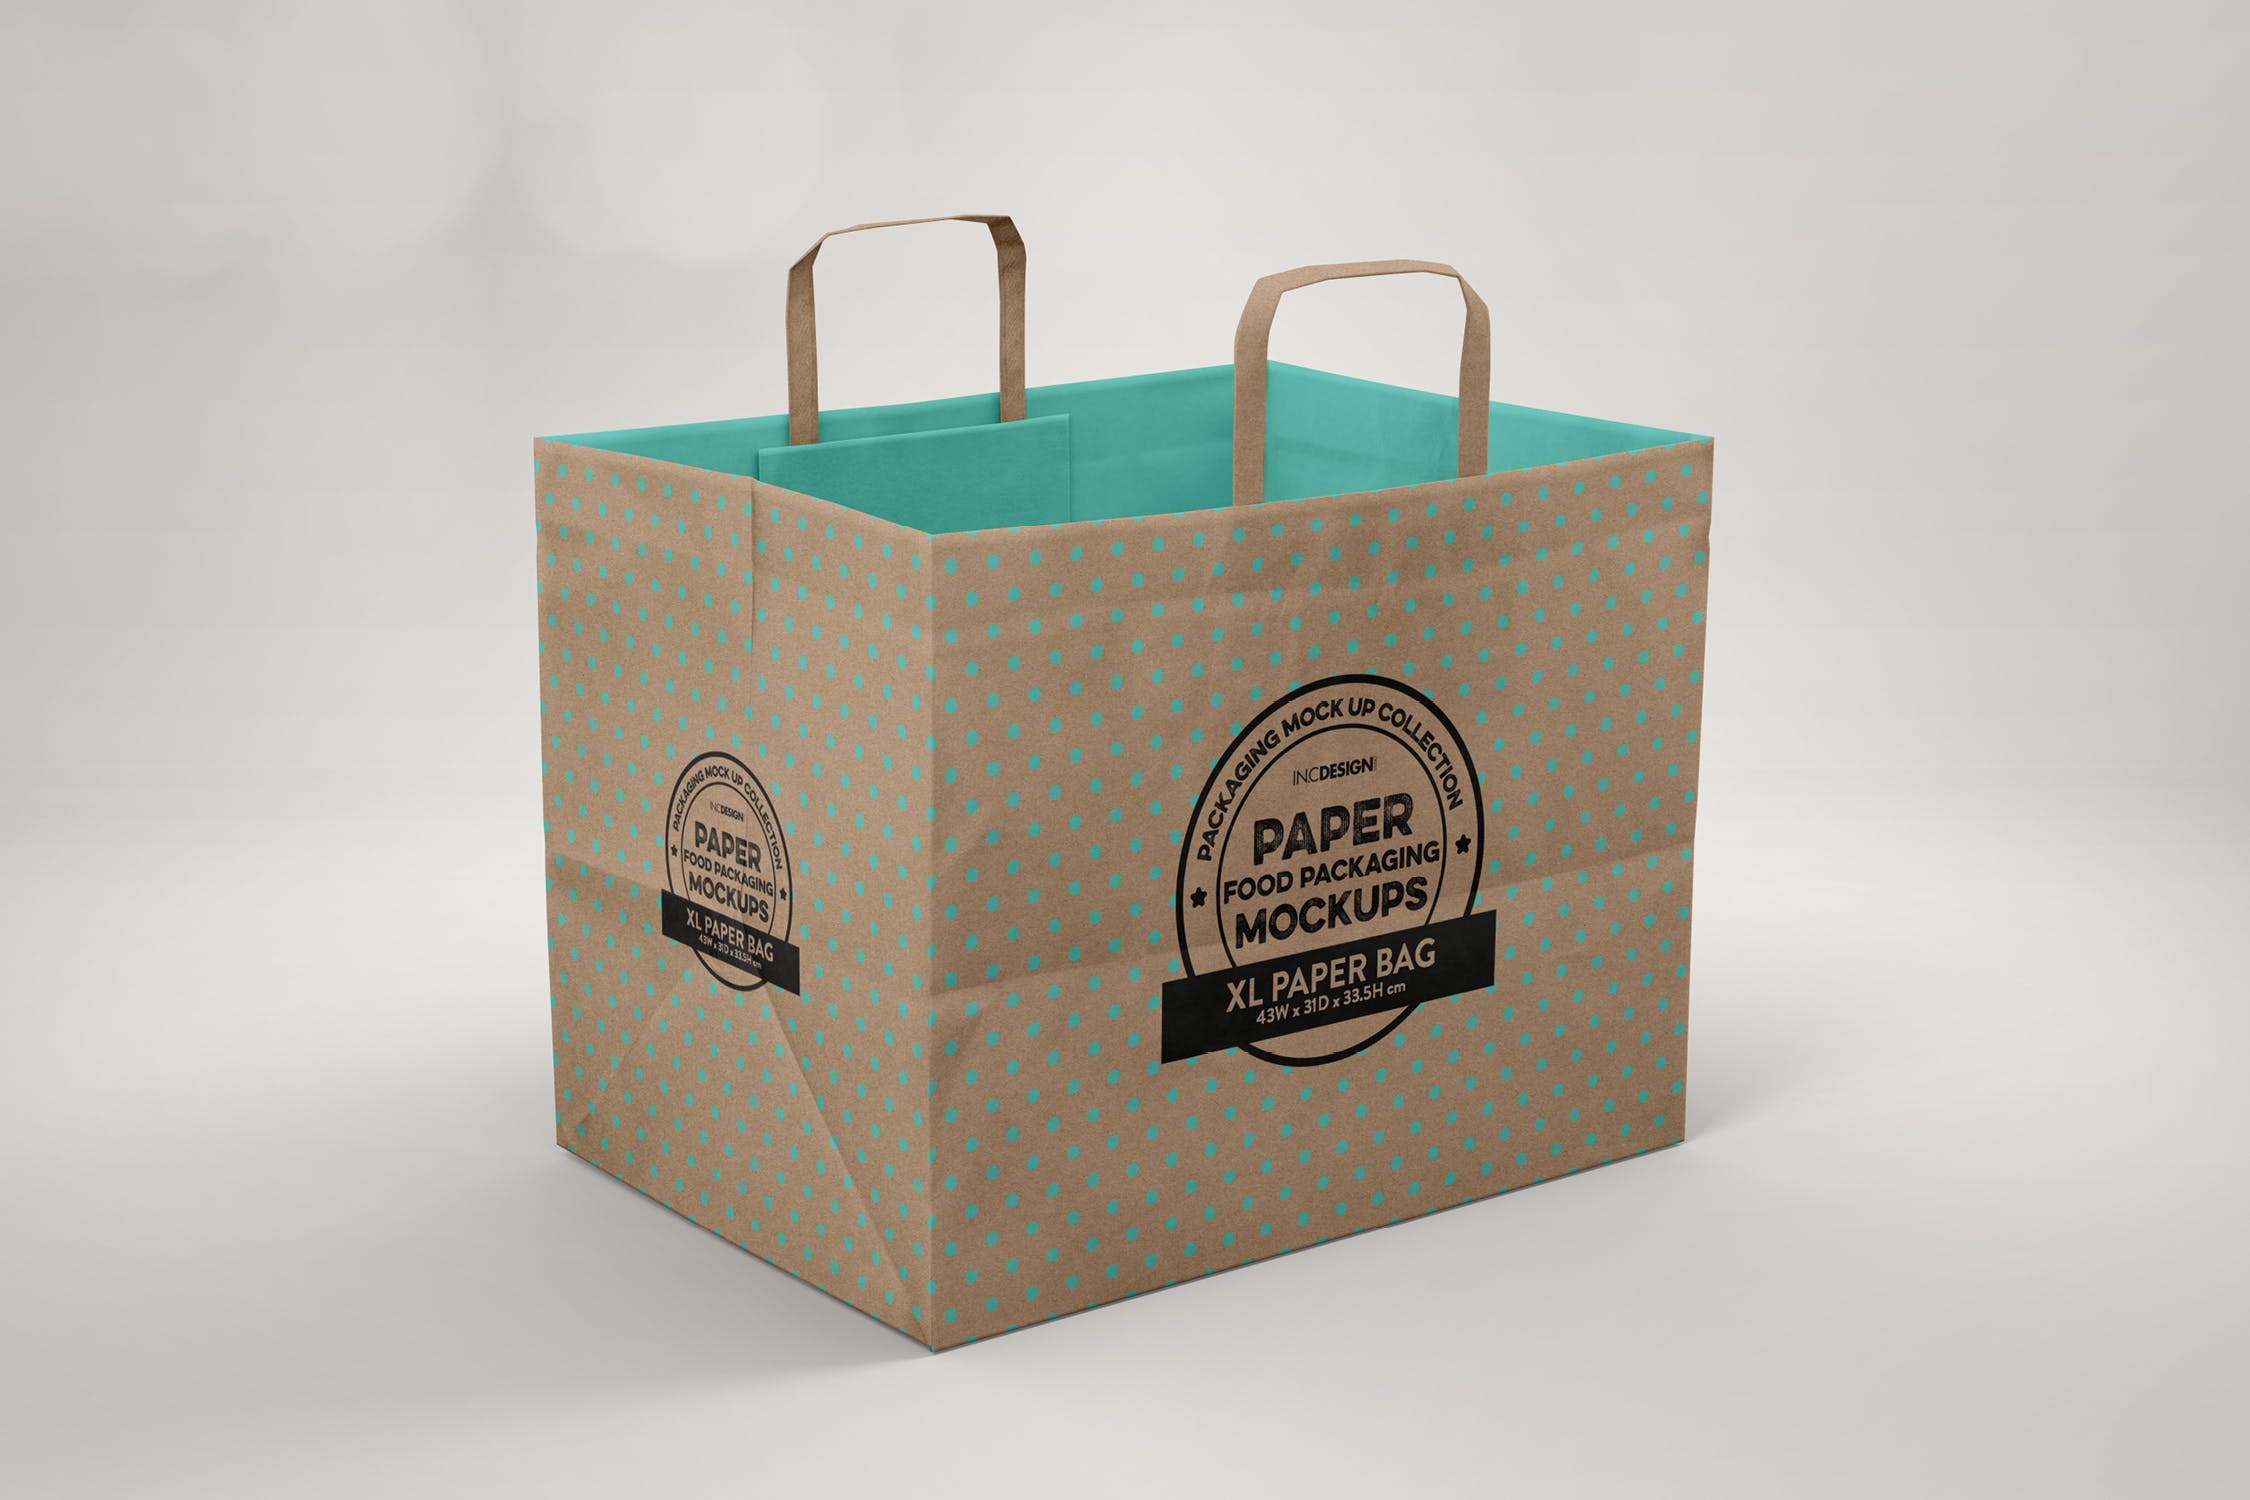 加大型购物纸袋设计图第一素材精选模板 XL Paper Bags with Flat Handles Mockup插图(1)